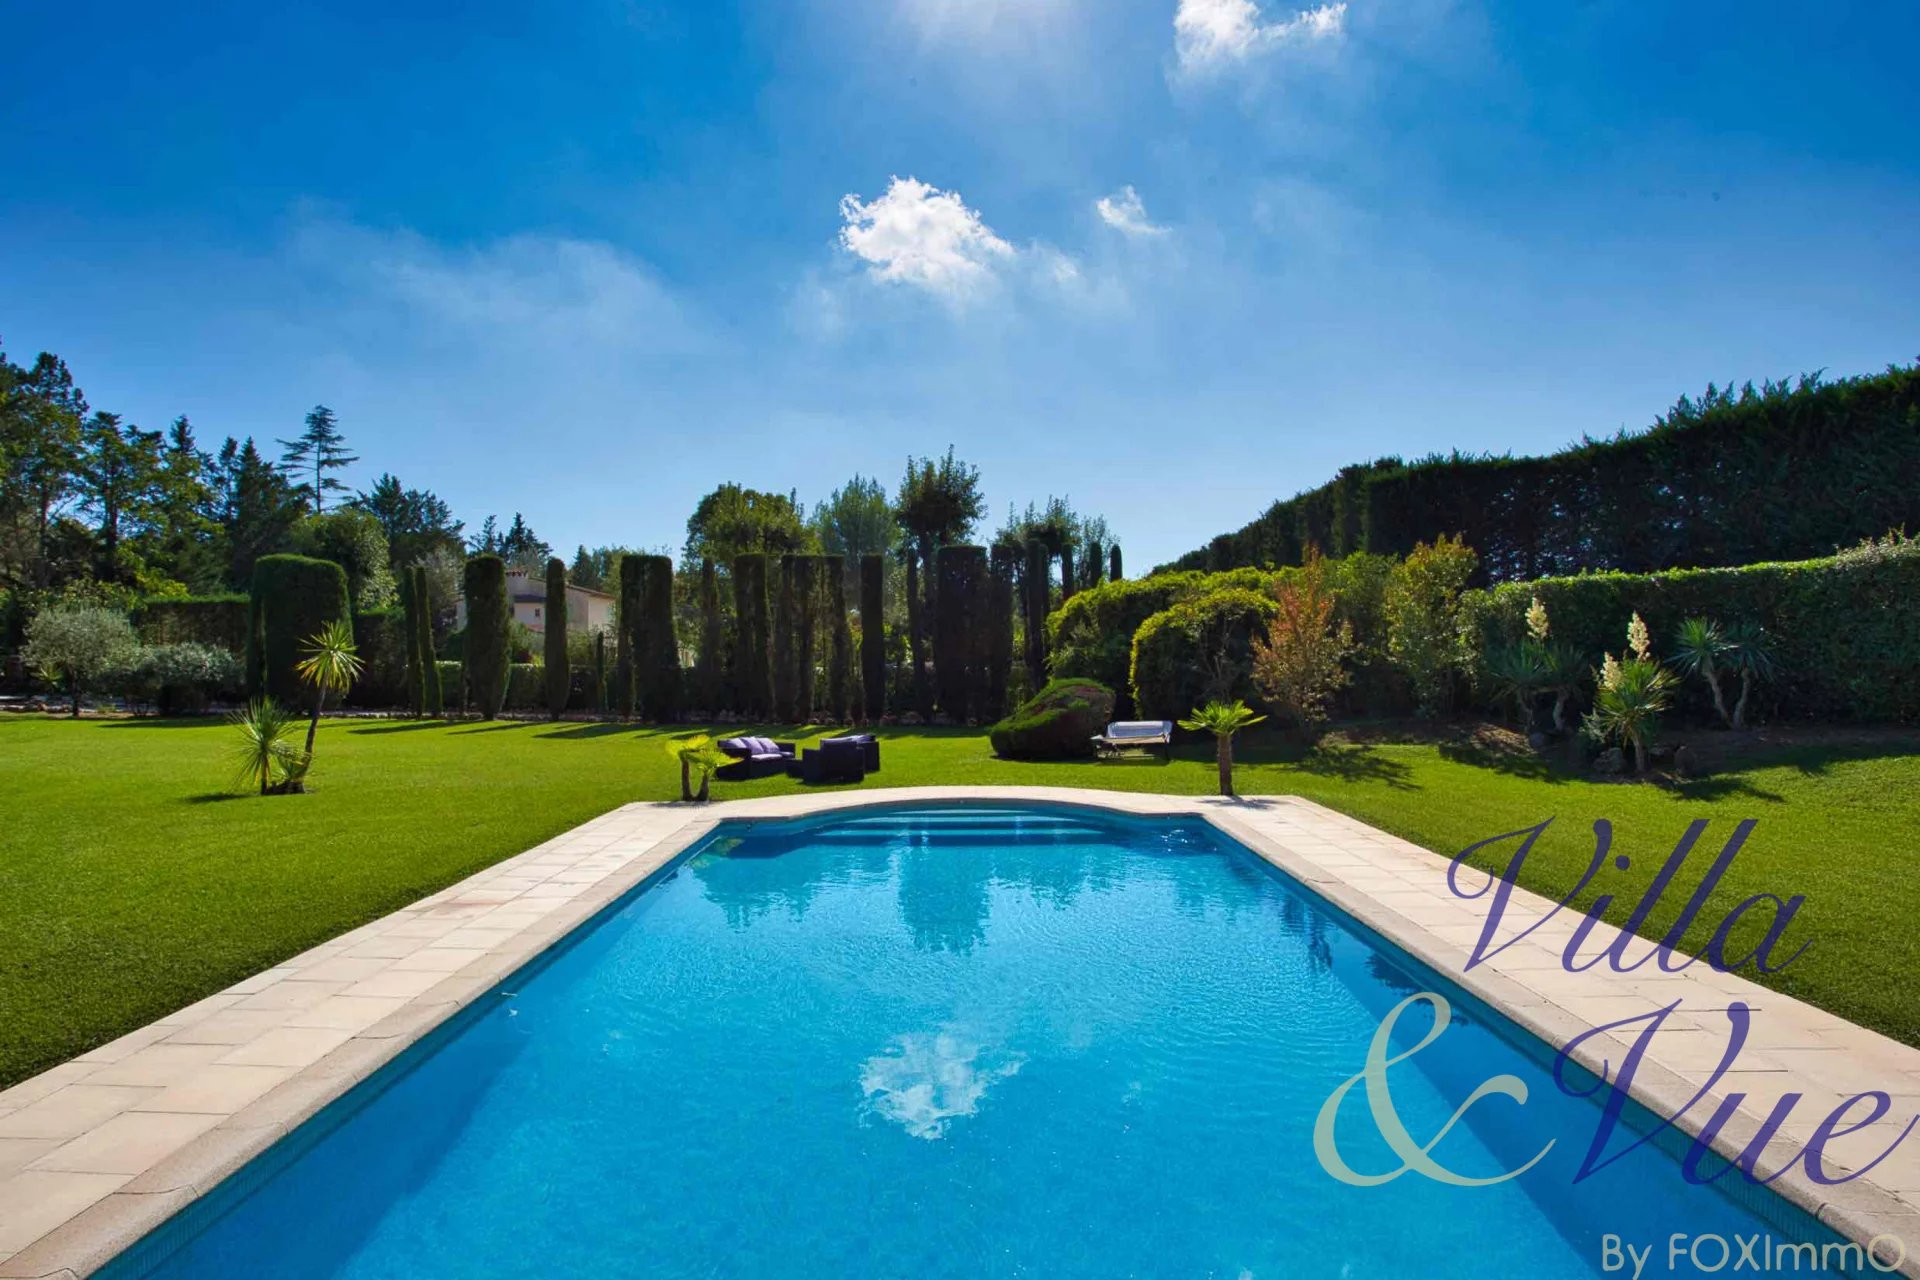 Limite Valbone, Magnifique Bastide, 280m2, 5 chambres, dépendance, 5000m2 de terrain plat et paysager, piscine, triple garage